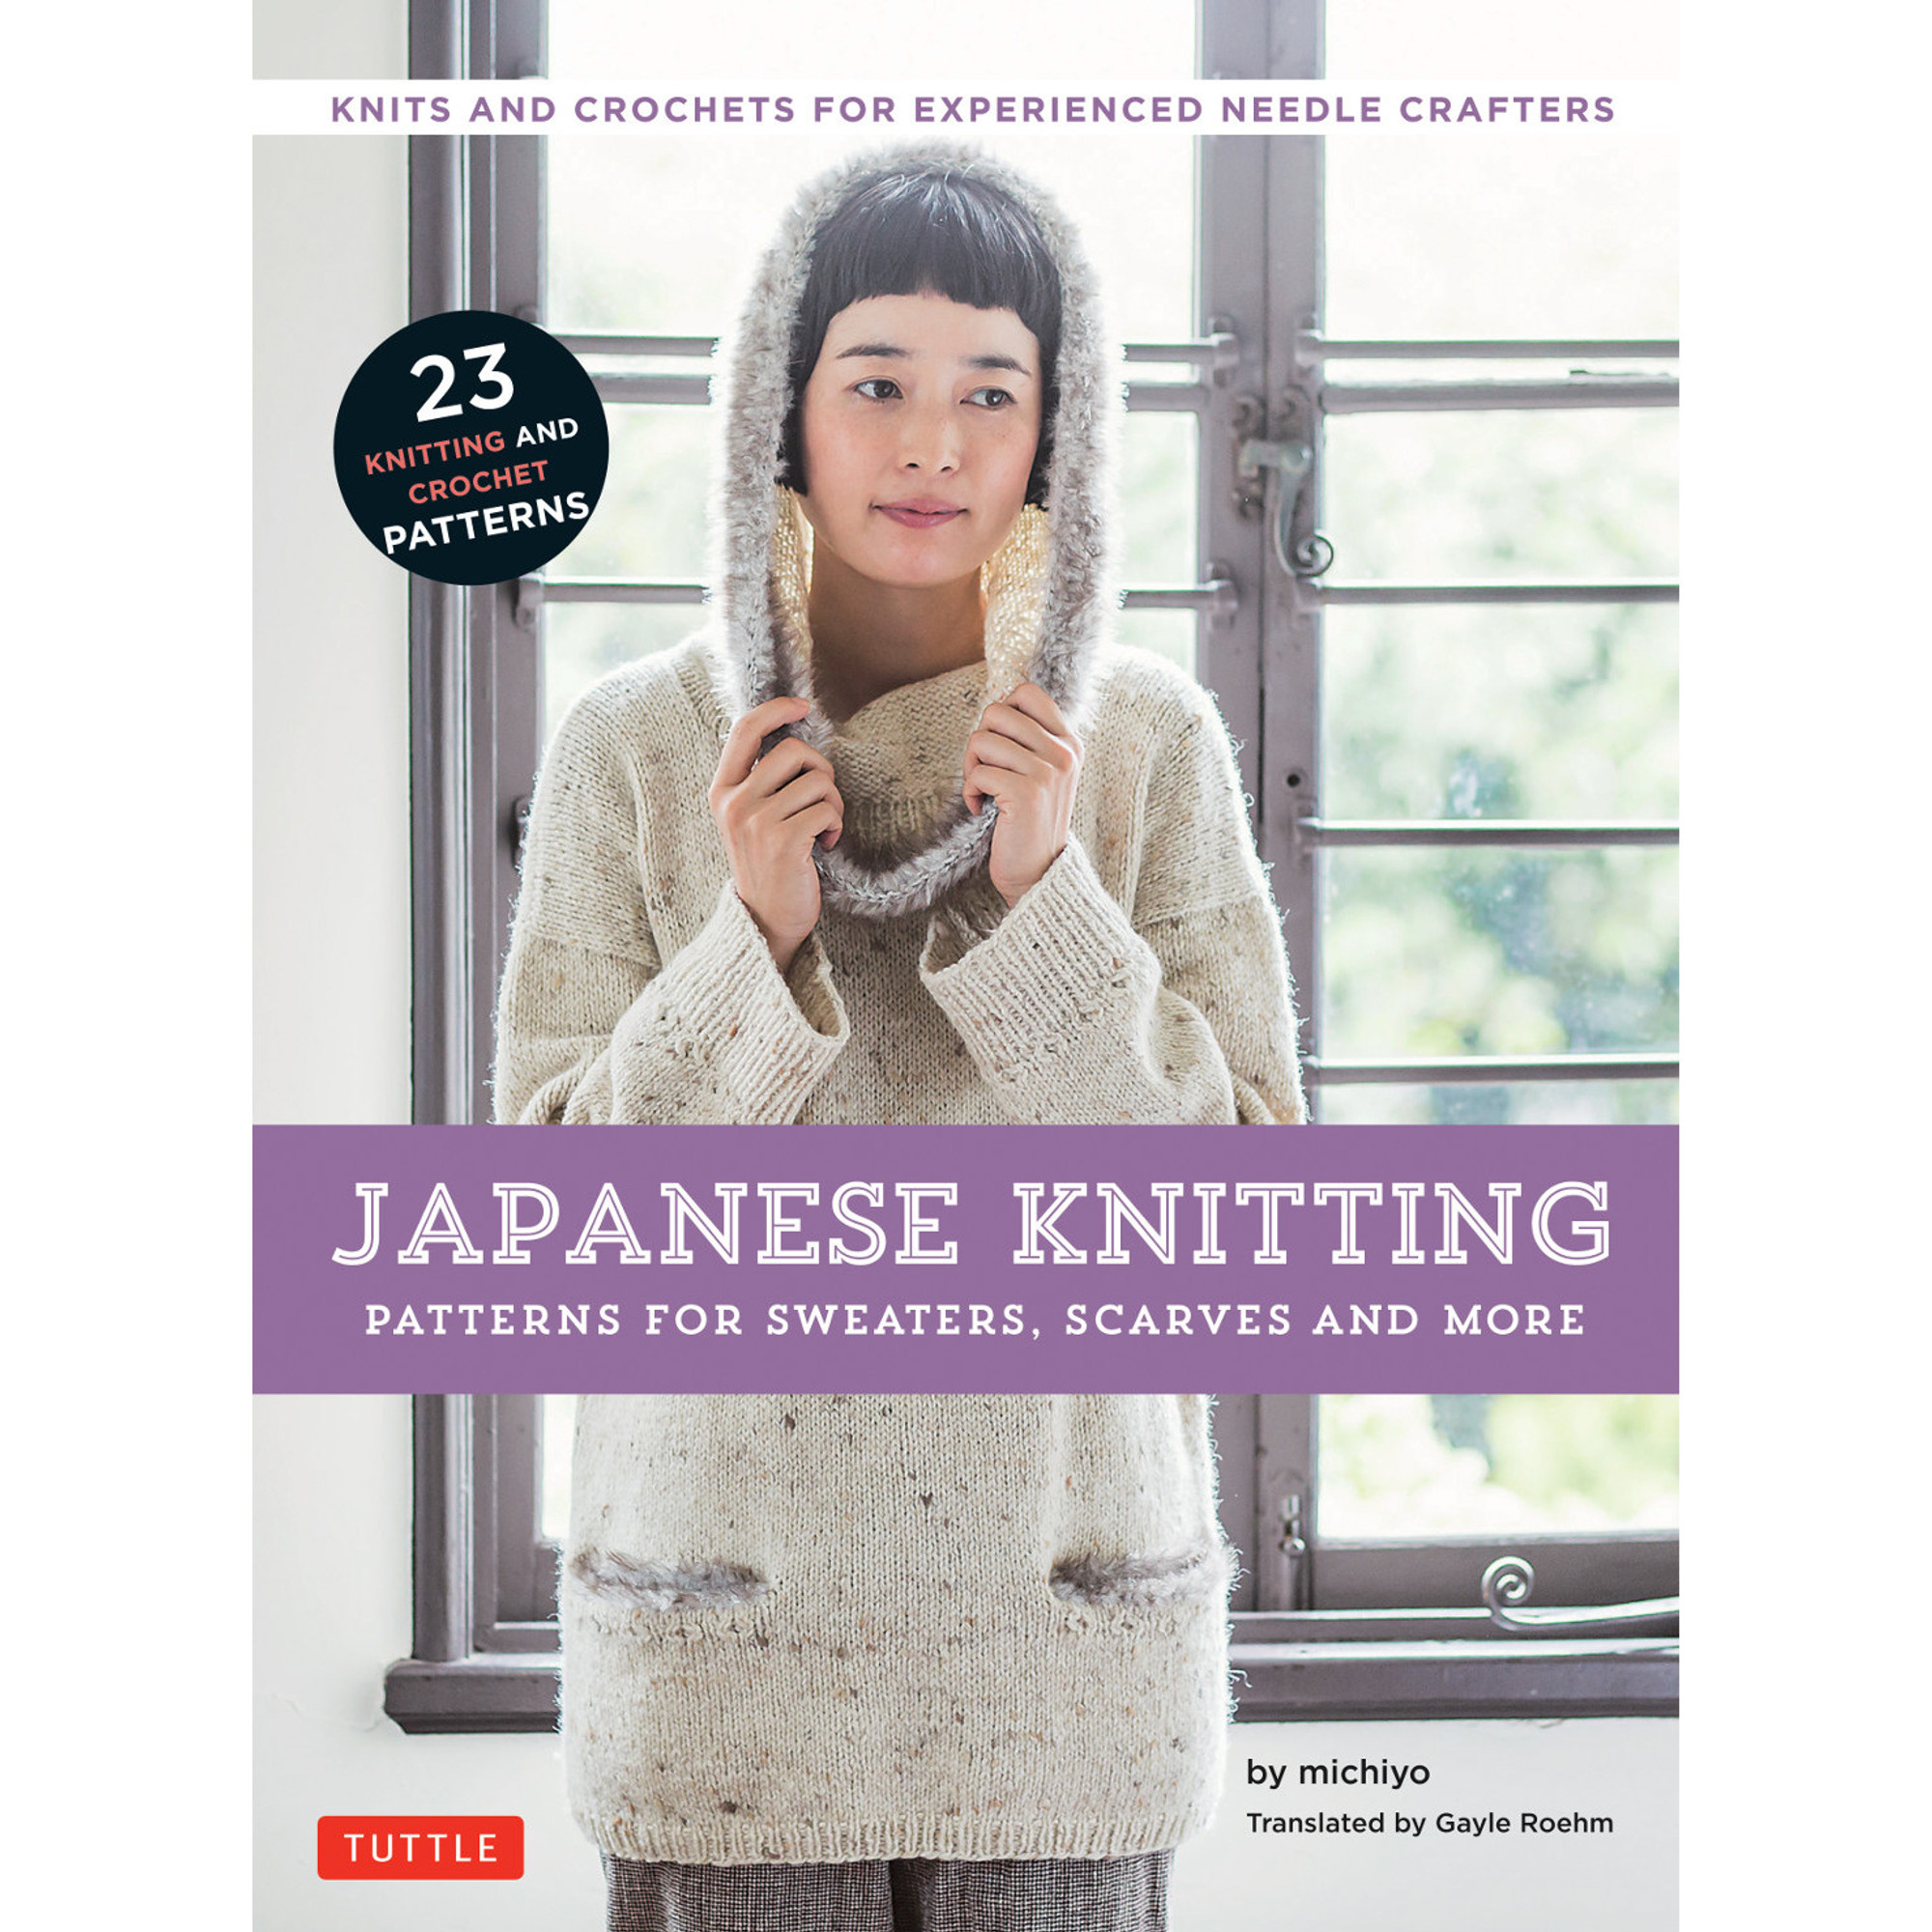 Knitting Pattern 1000 : Knitting needle and Crochet book japanese